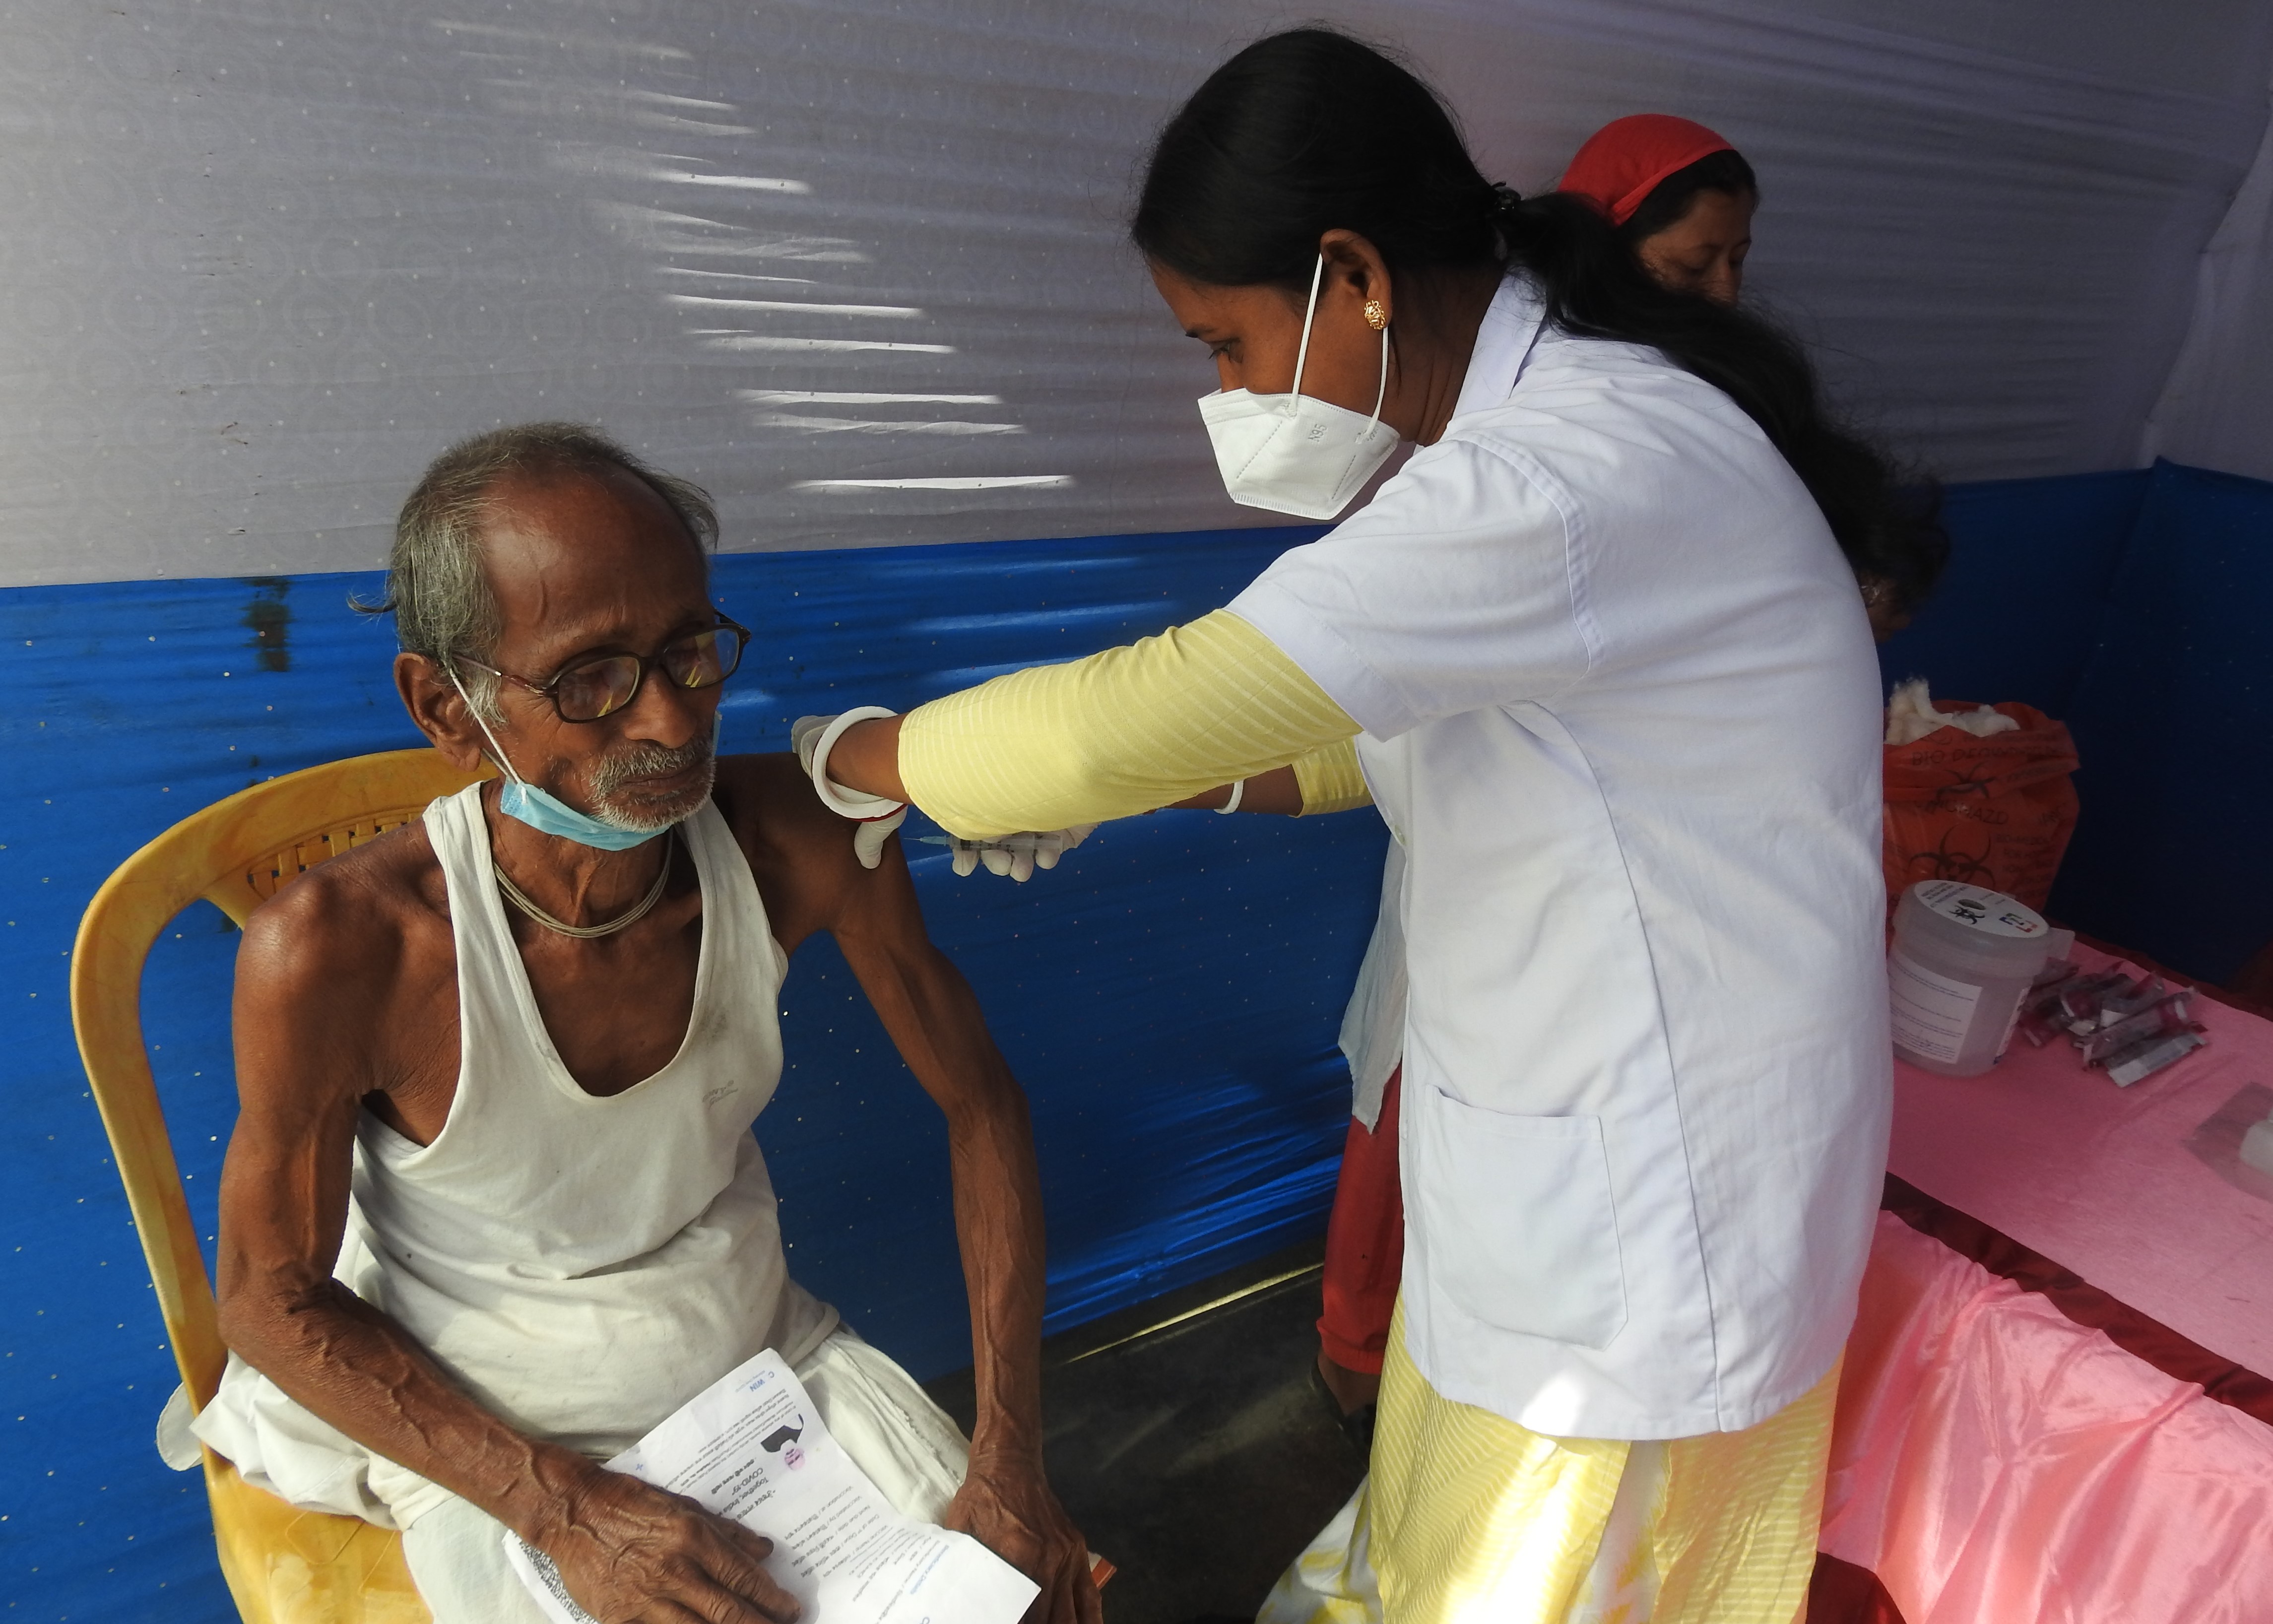 असम में 220 केवी सलाकाटी सबस्टेशन के पास चिकित्सा स्वास्थ्य जांच और टीकाकरण शिविर